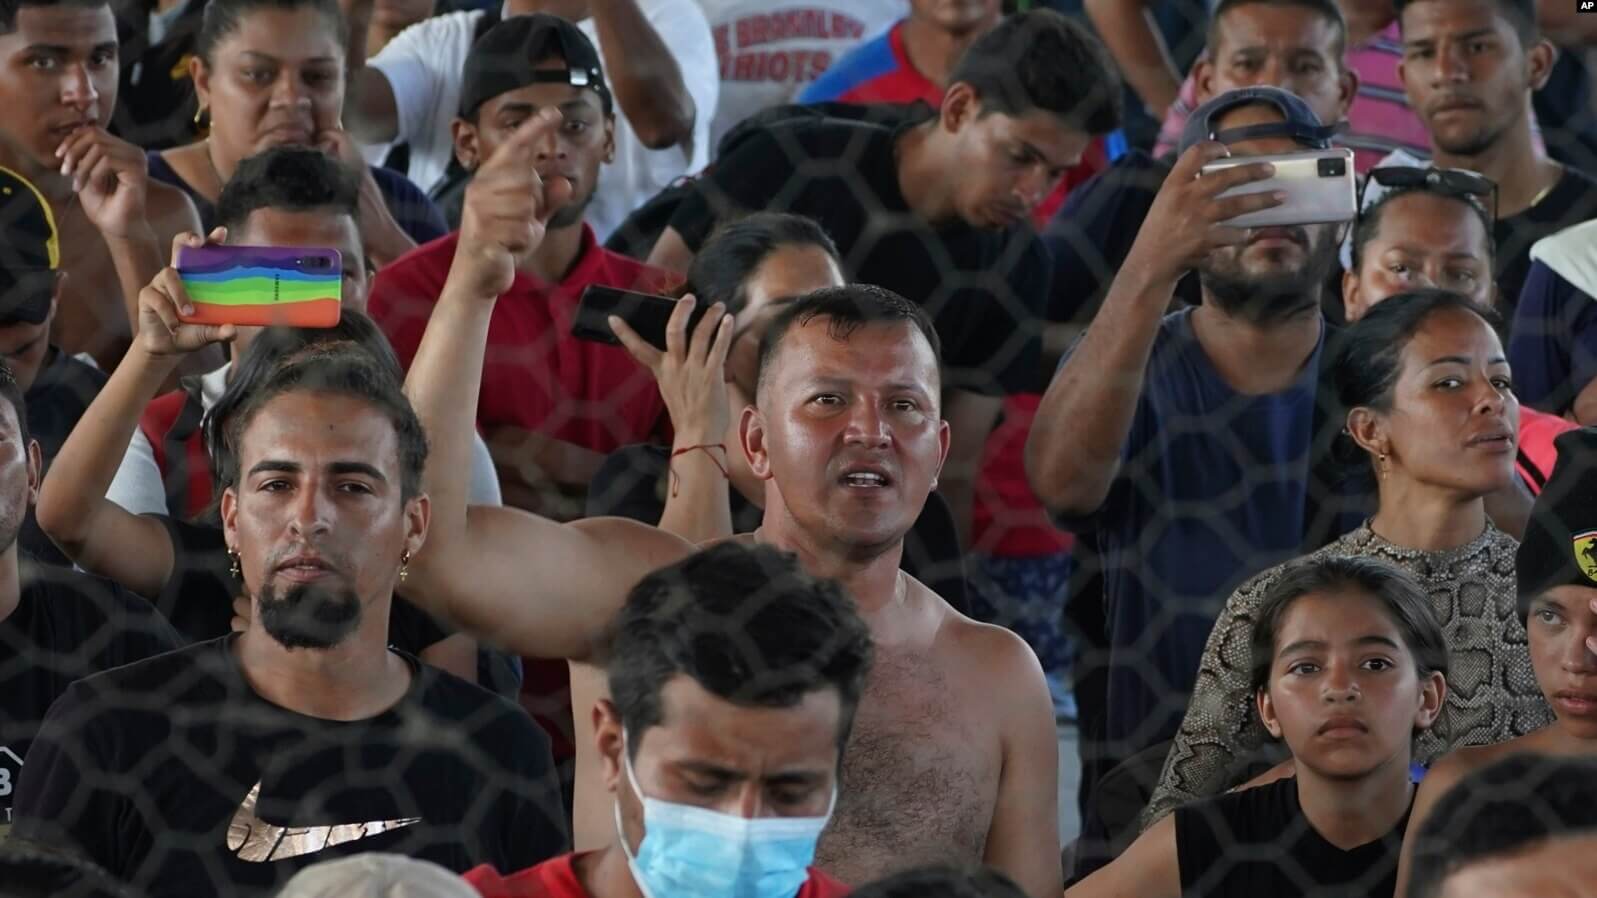 El migrante venezolano Eymar Hernández, centro, asiste a una asamblea mientras se refugia en un complejo deportivo en Huixtla, estado de Chiapas, México, el miércoles 8 de junio de 2022. (AP Foto/Marco Ugarte)